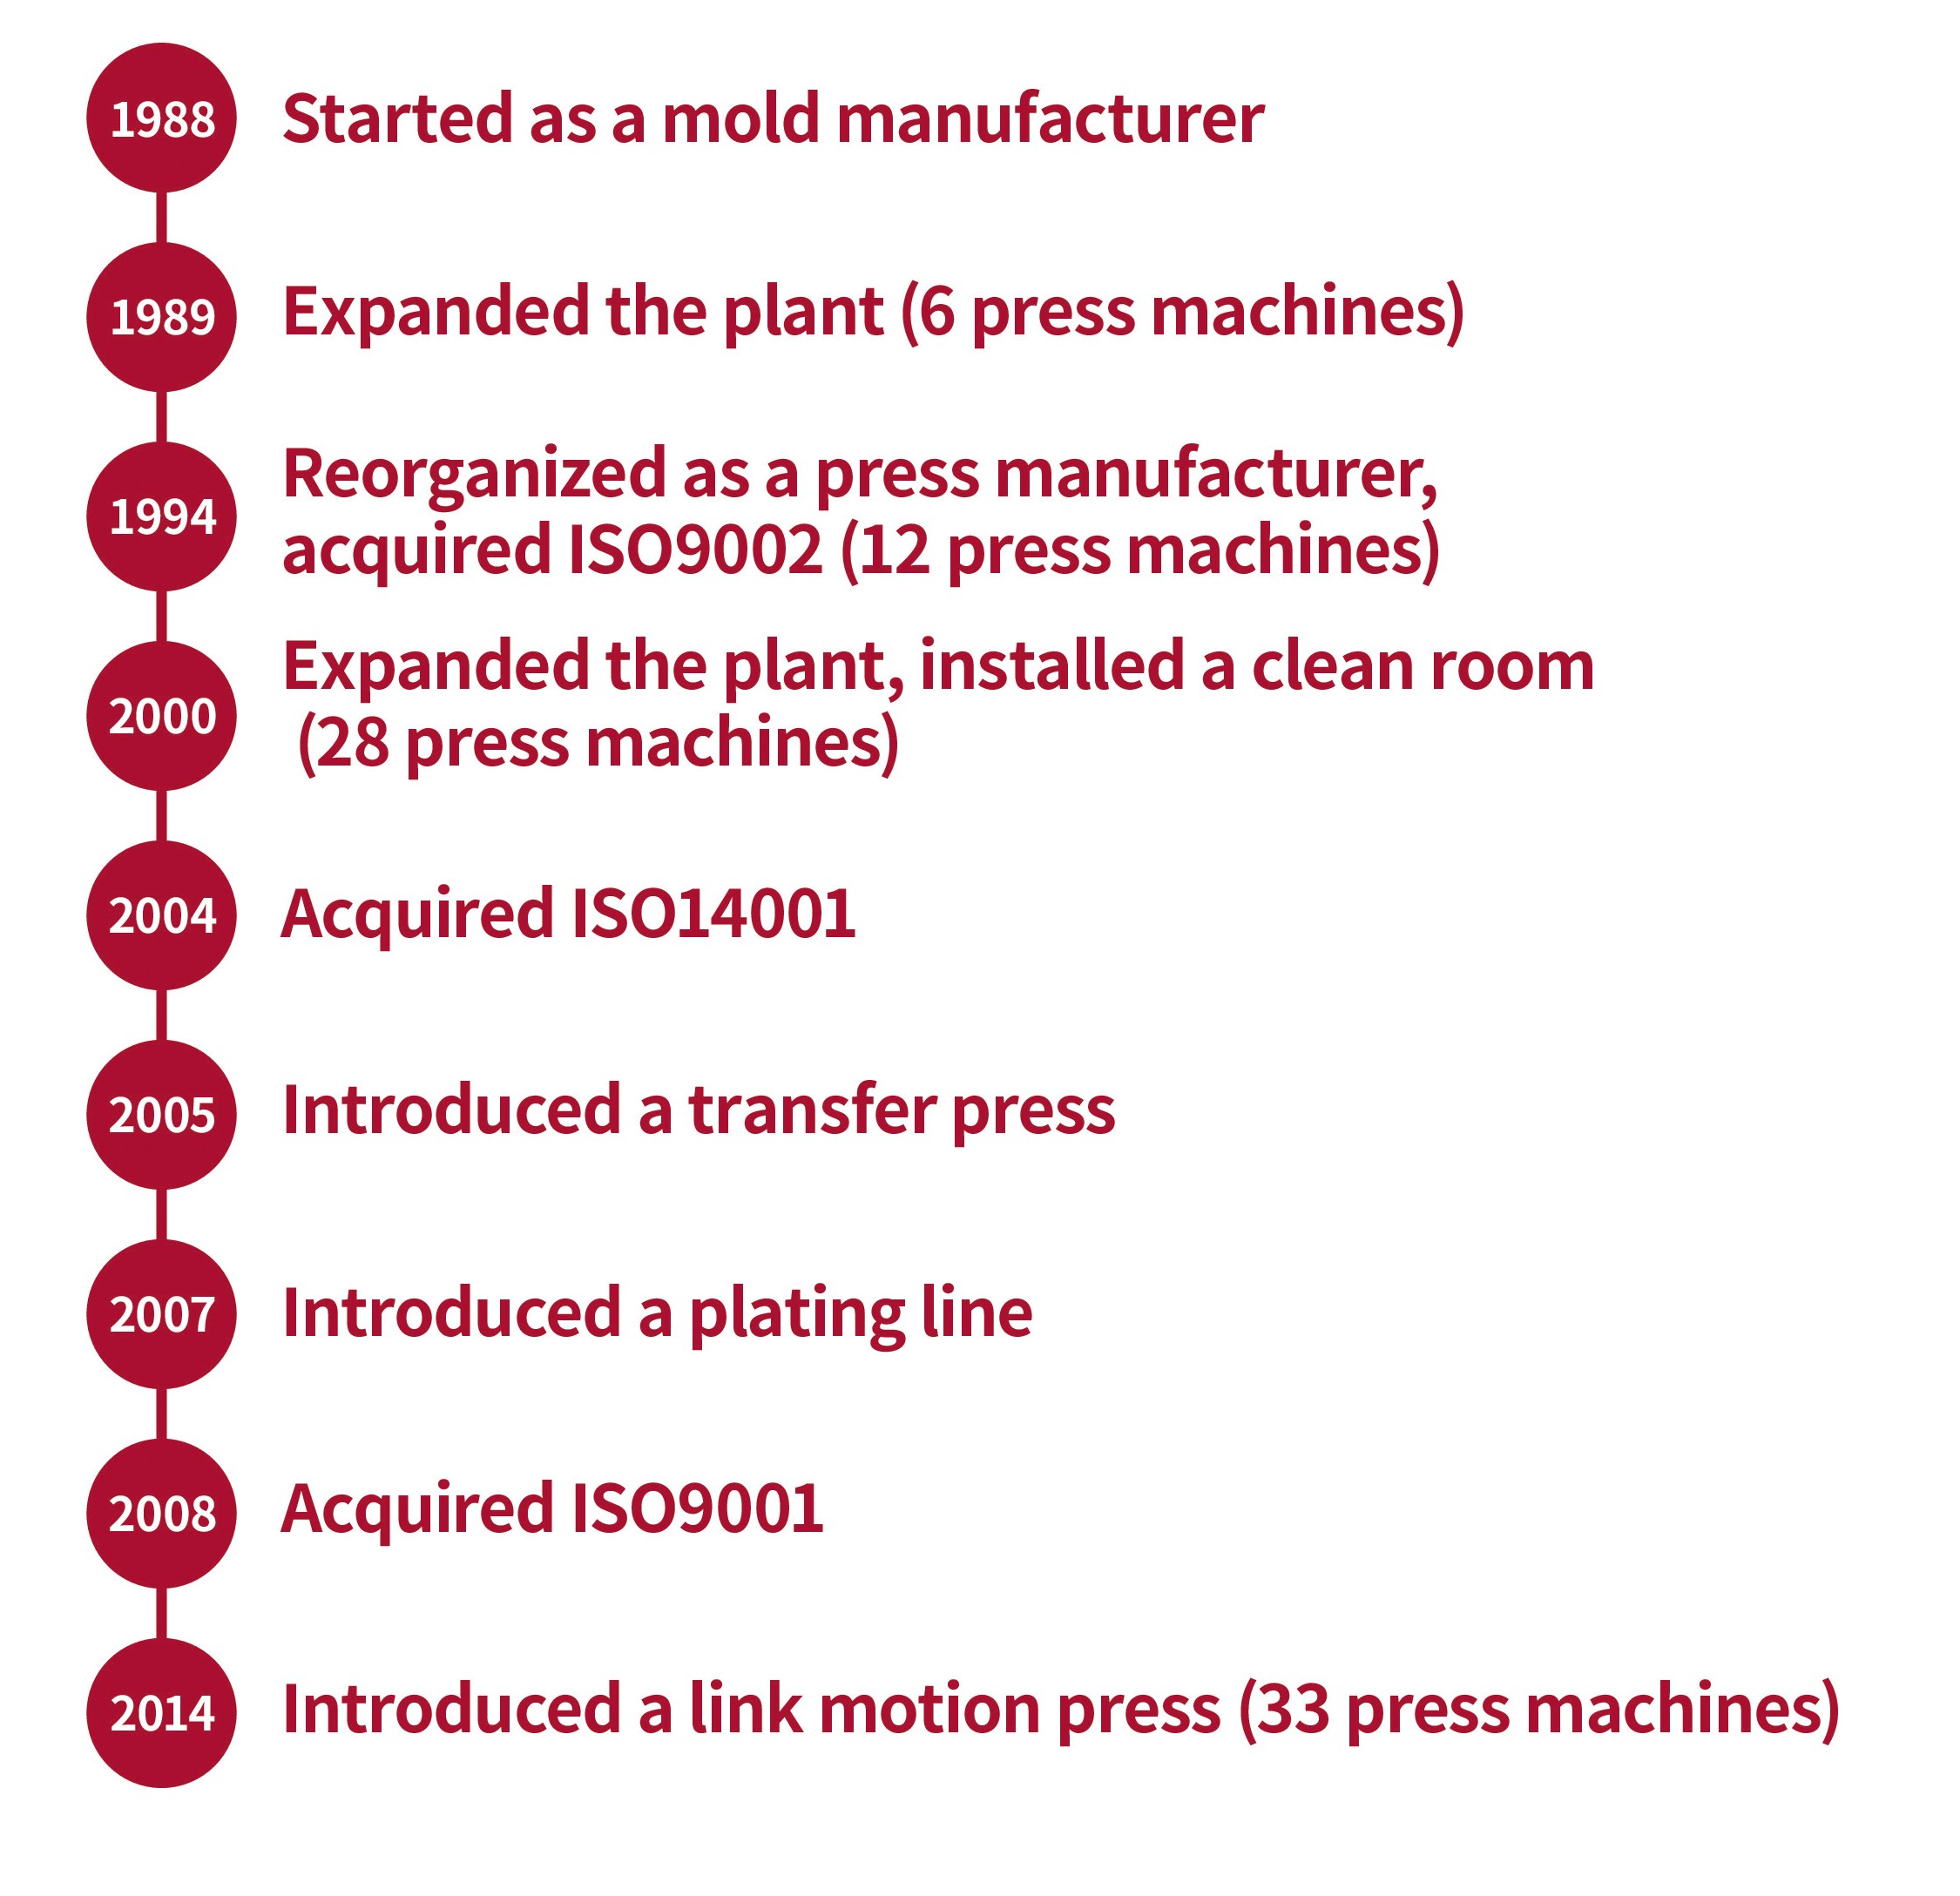 1988年：金型制作メーカーとしてスタート。1989年：工場増設。プレス機6台。1994年：プレスメーカーとして再編。ISO9002取得。プレス機12台。2000年：工場増設、クリーンルームを新設。プレス機28台。2004年ISO14001取得。2005年：トランスファープレスを導入。2007年：めっきラインを立上げ。2008年：ISO9001取得。2014年：リンクモーションプレスを導入。プレス機33台。